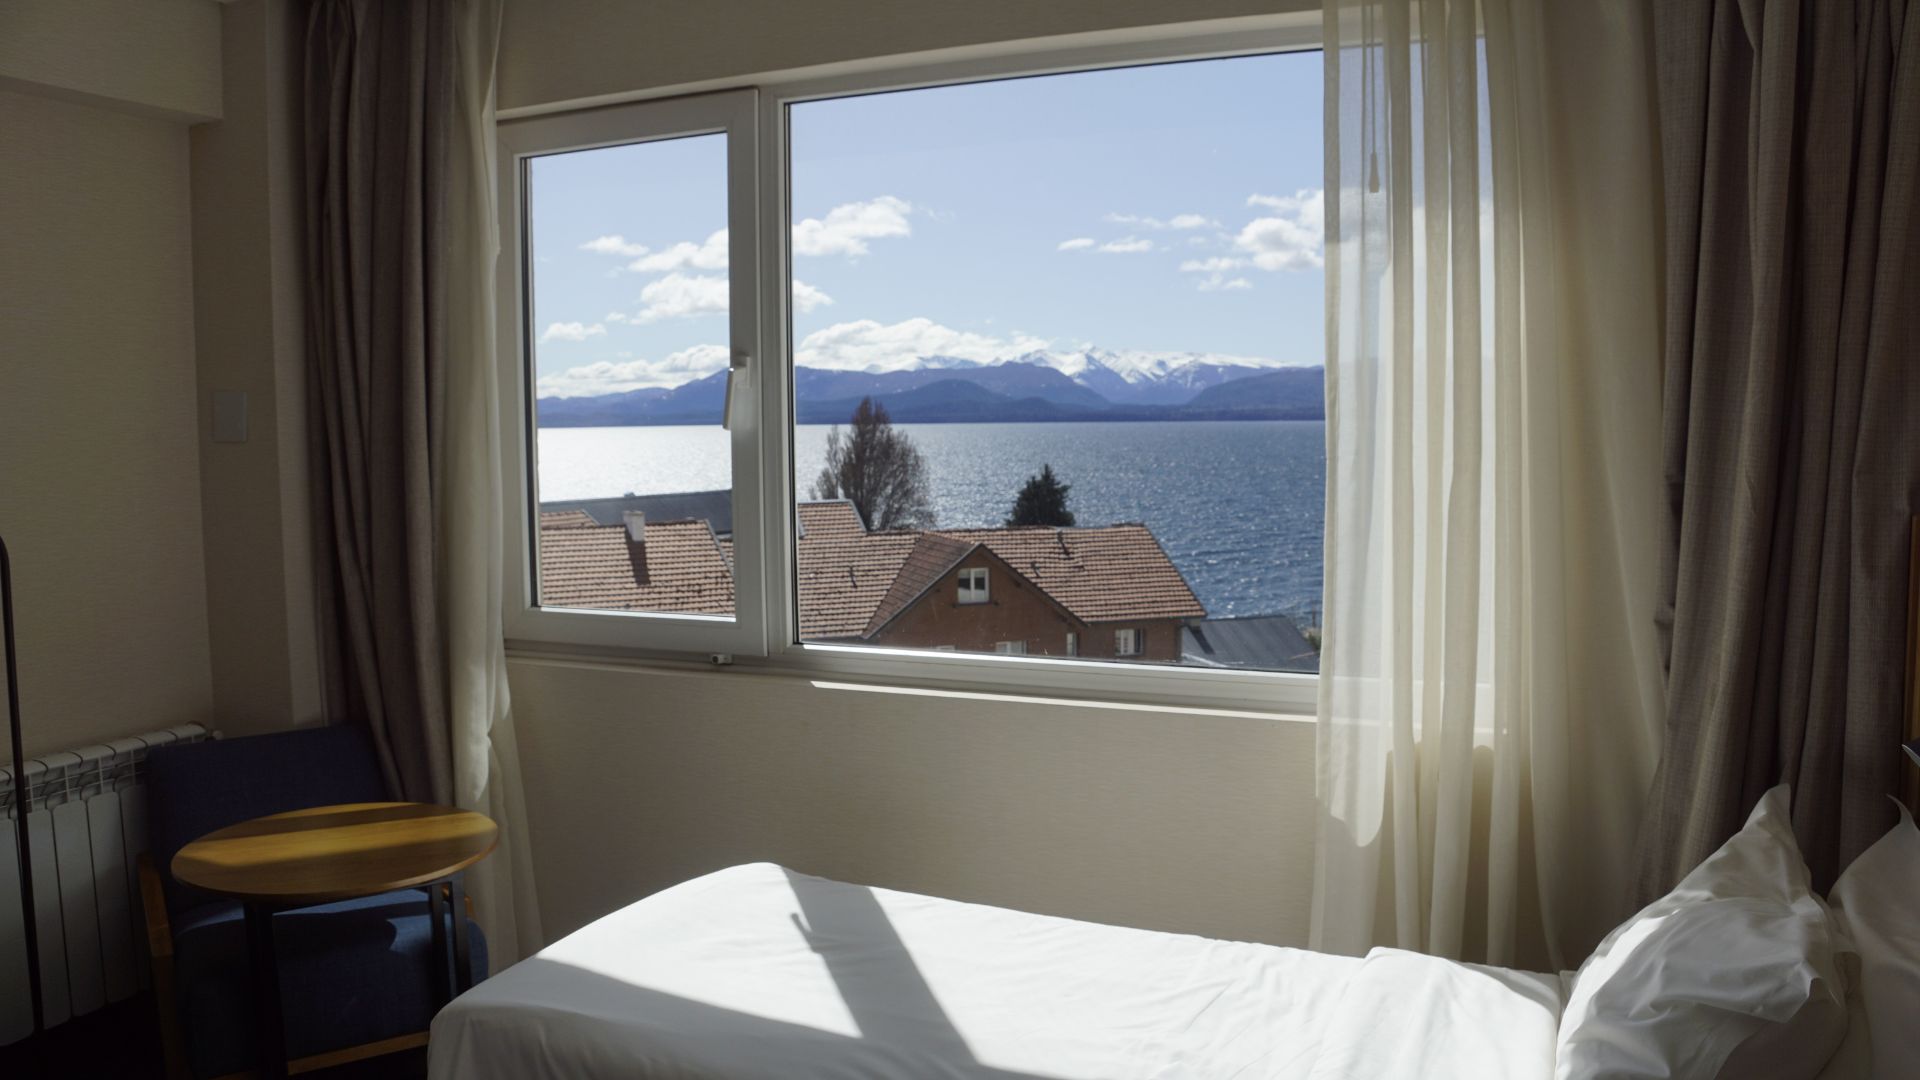 Los hoteles tendrán precios máximos en distintas localidades turísticas del país, entre ellas Bariloche (Crédito: Prensa Gyra.com)